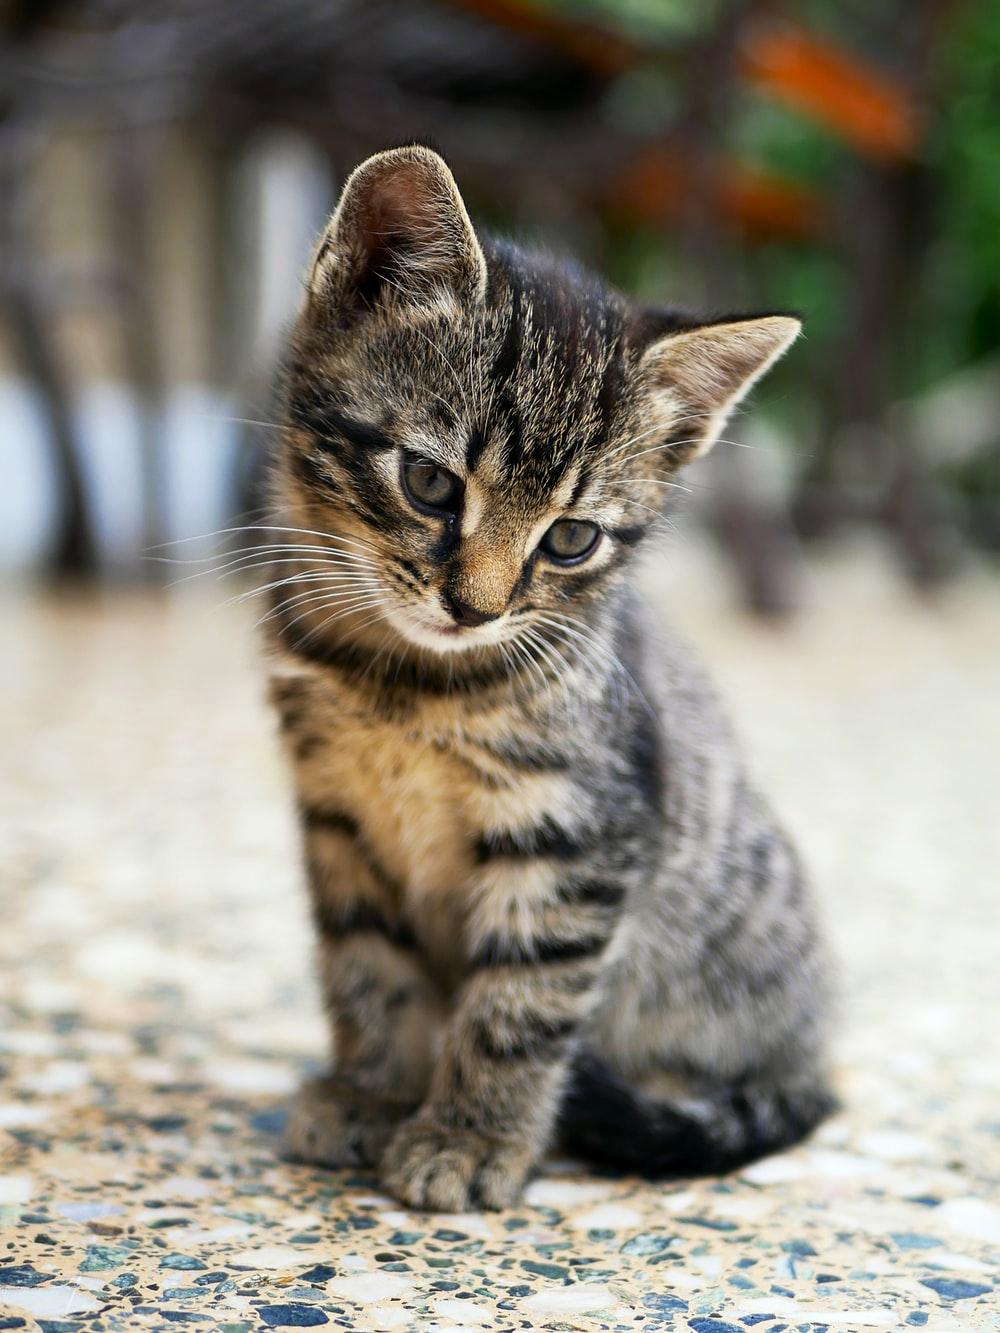 Kitten Image. Download Free Image